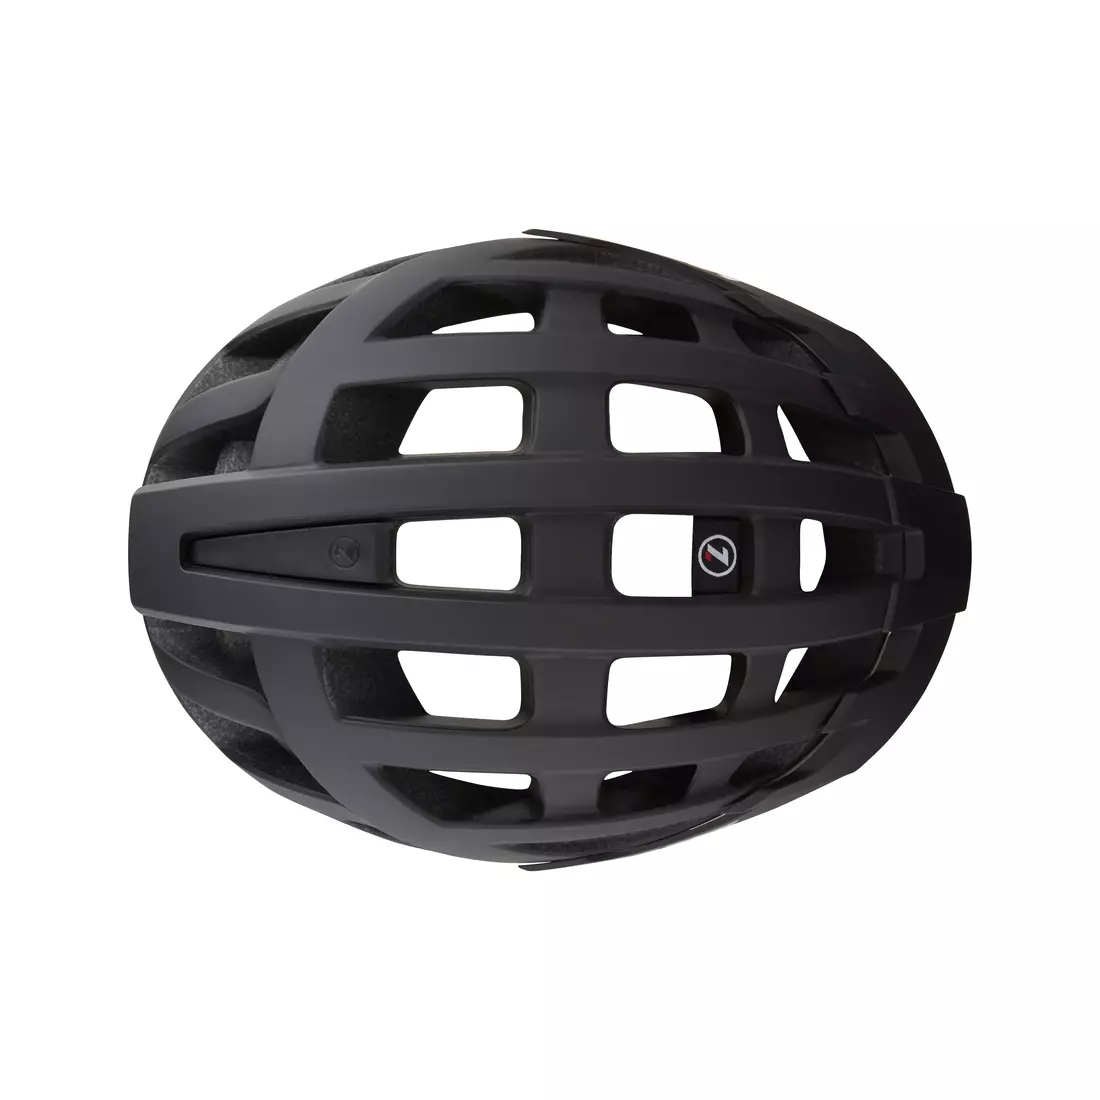 LAZER kask rowerowy compact dlx czarny BLC2197885190